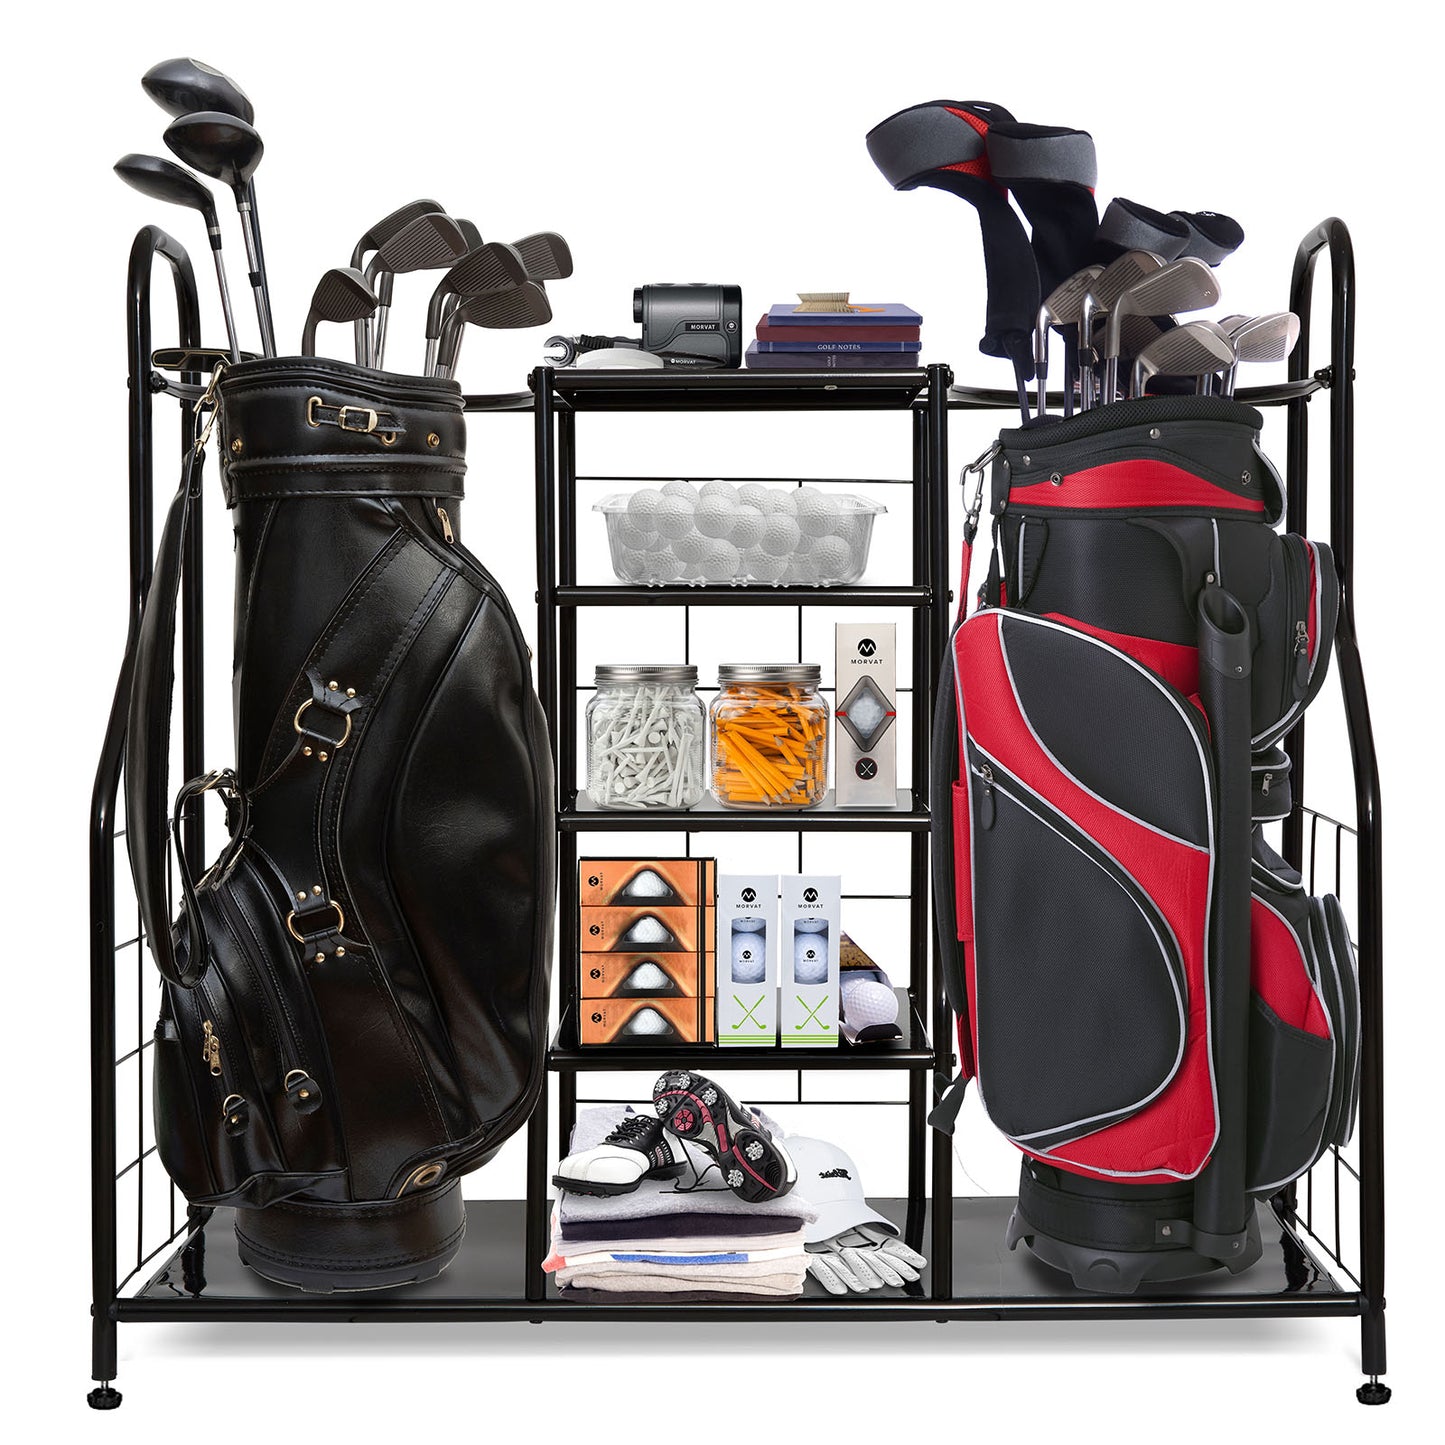 Morvat Golf Organizer Очень большая двойная металлическая черная подставка Идеальный способ хранения и организации ваших сумок для гольфа, клюшек, мячей, гаджетов, аксессуаров и оборудования в сарае, подвале и гараже